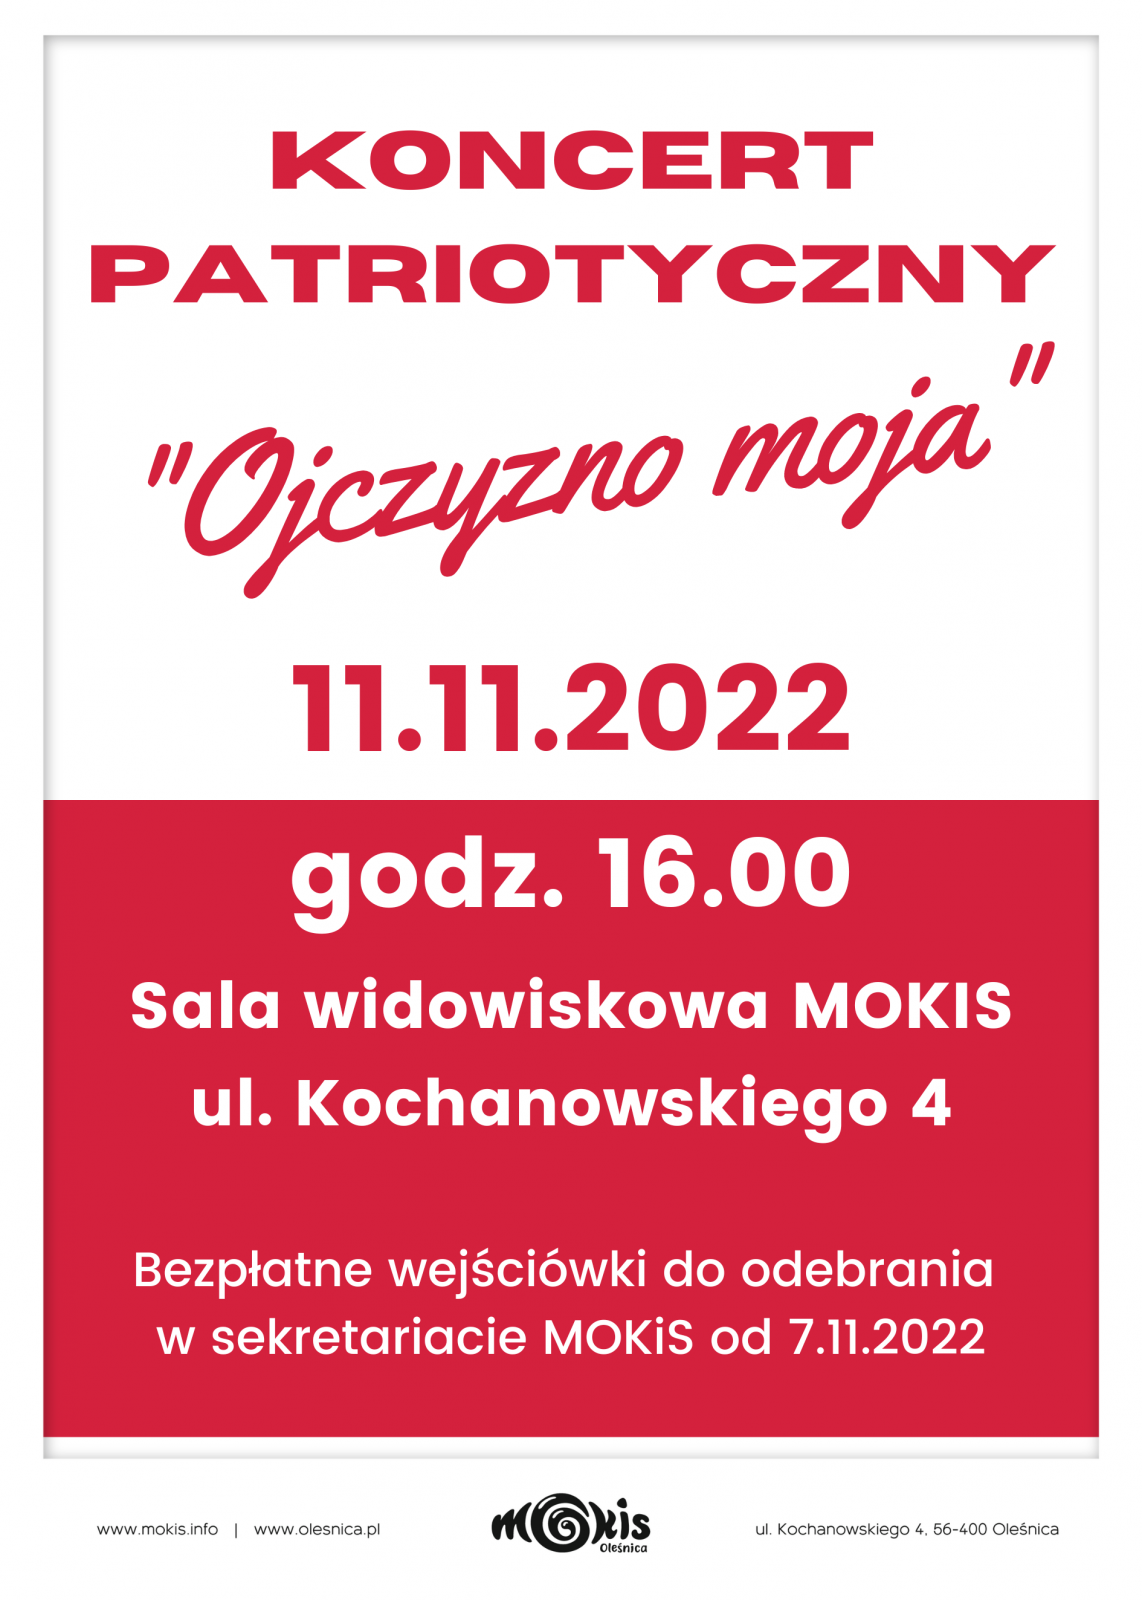 koncert patriotyczny 11.11.2022